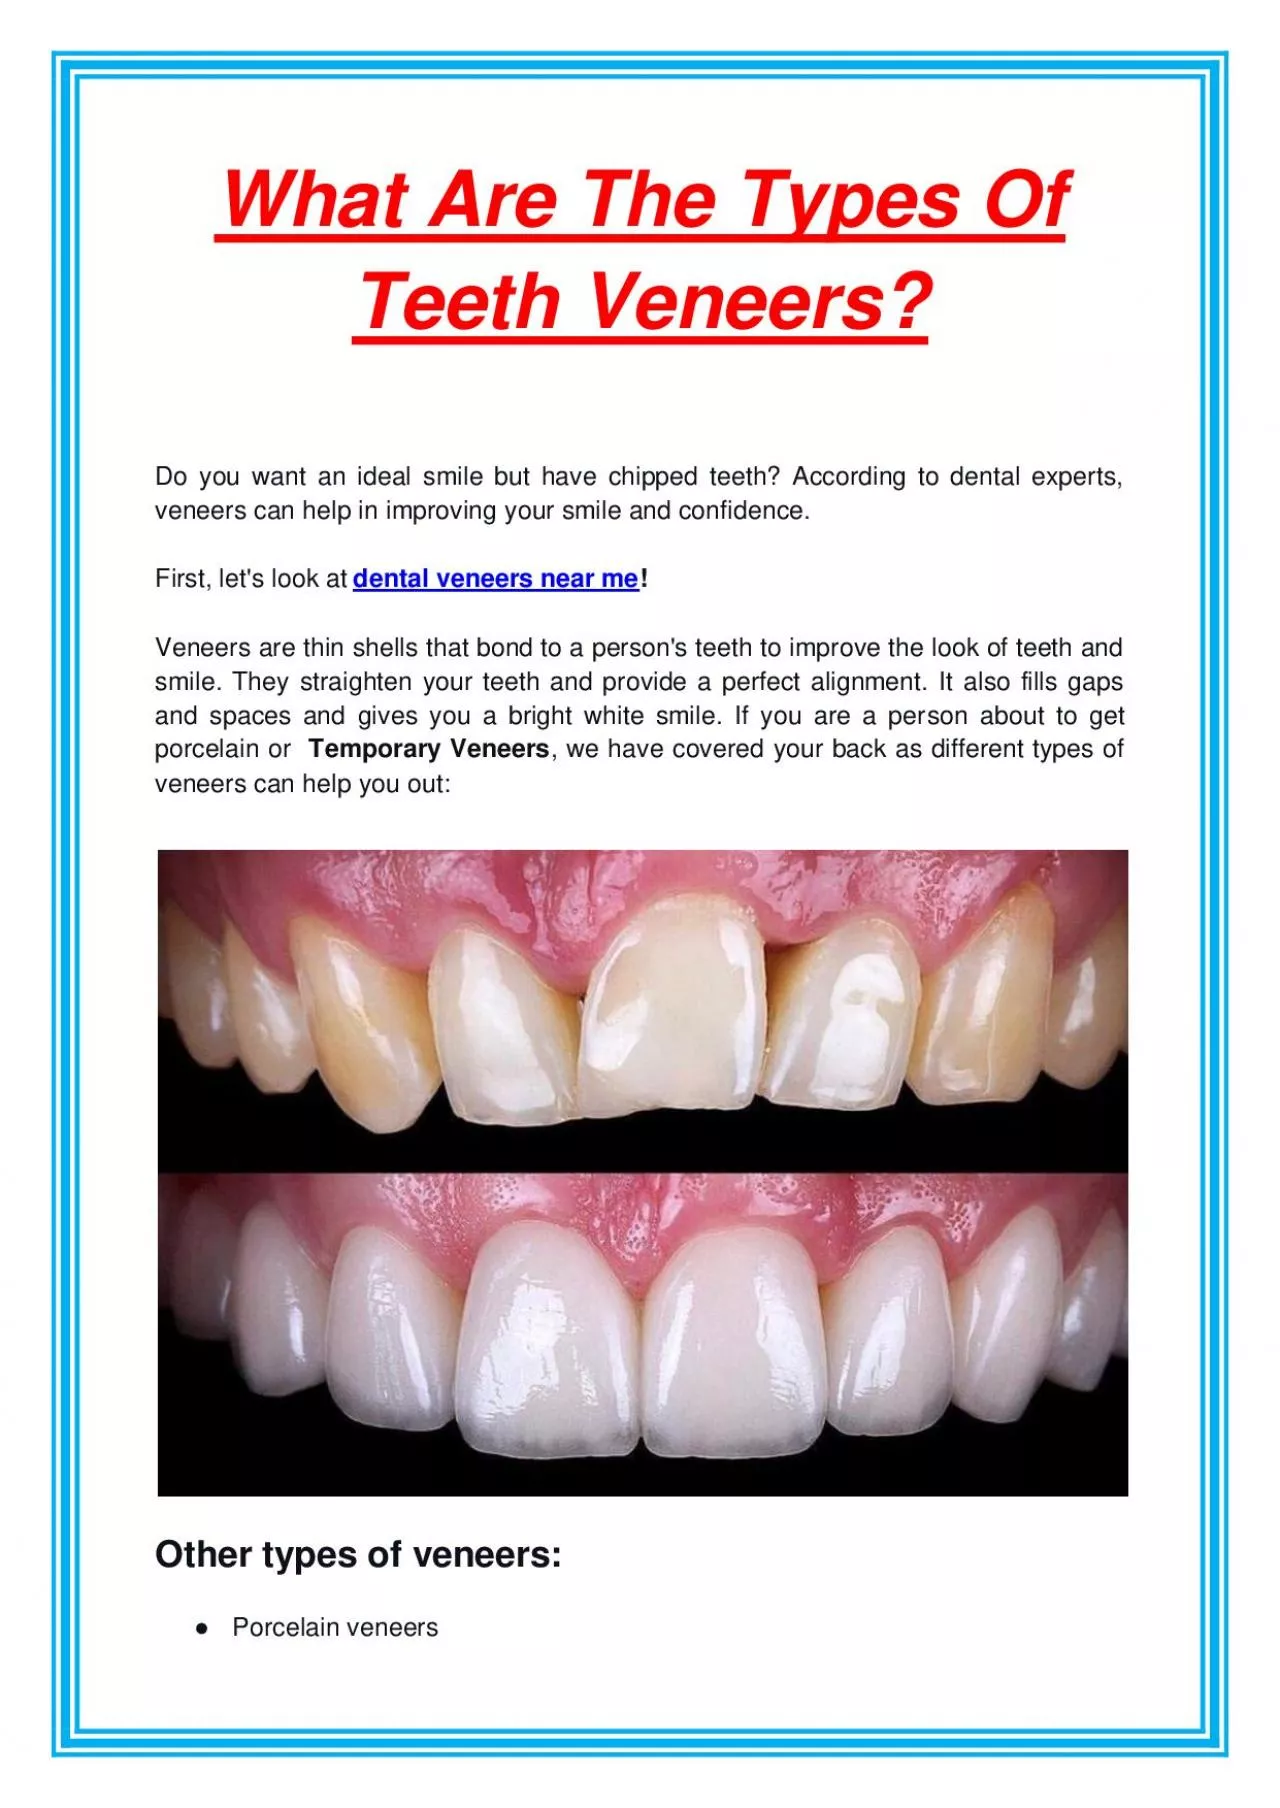 What Are The Types Of Teeth Veneers?